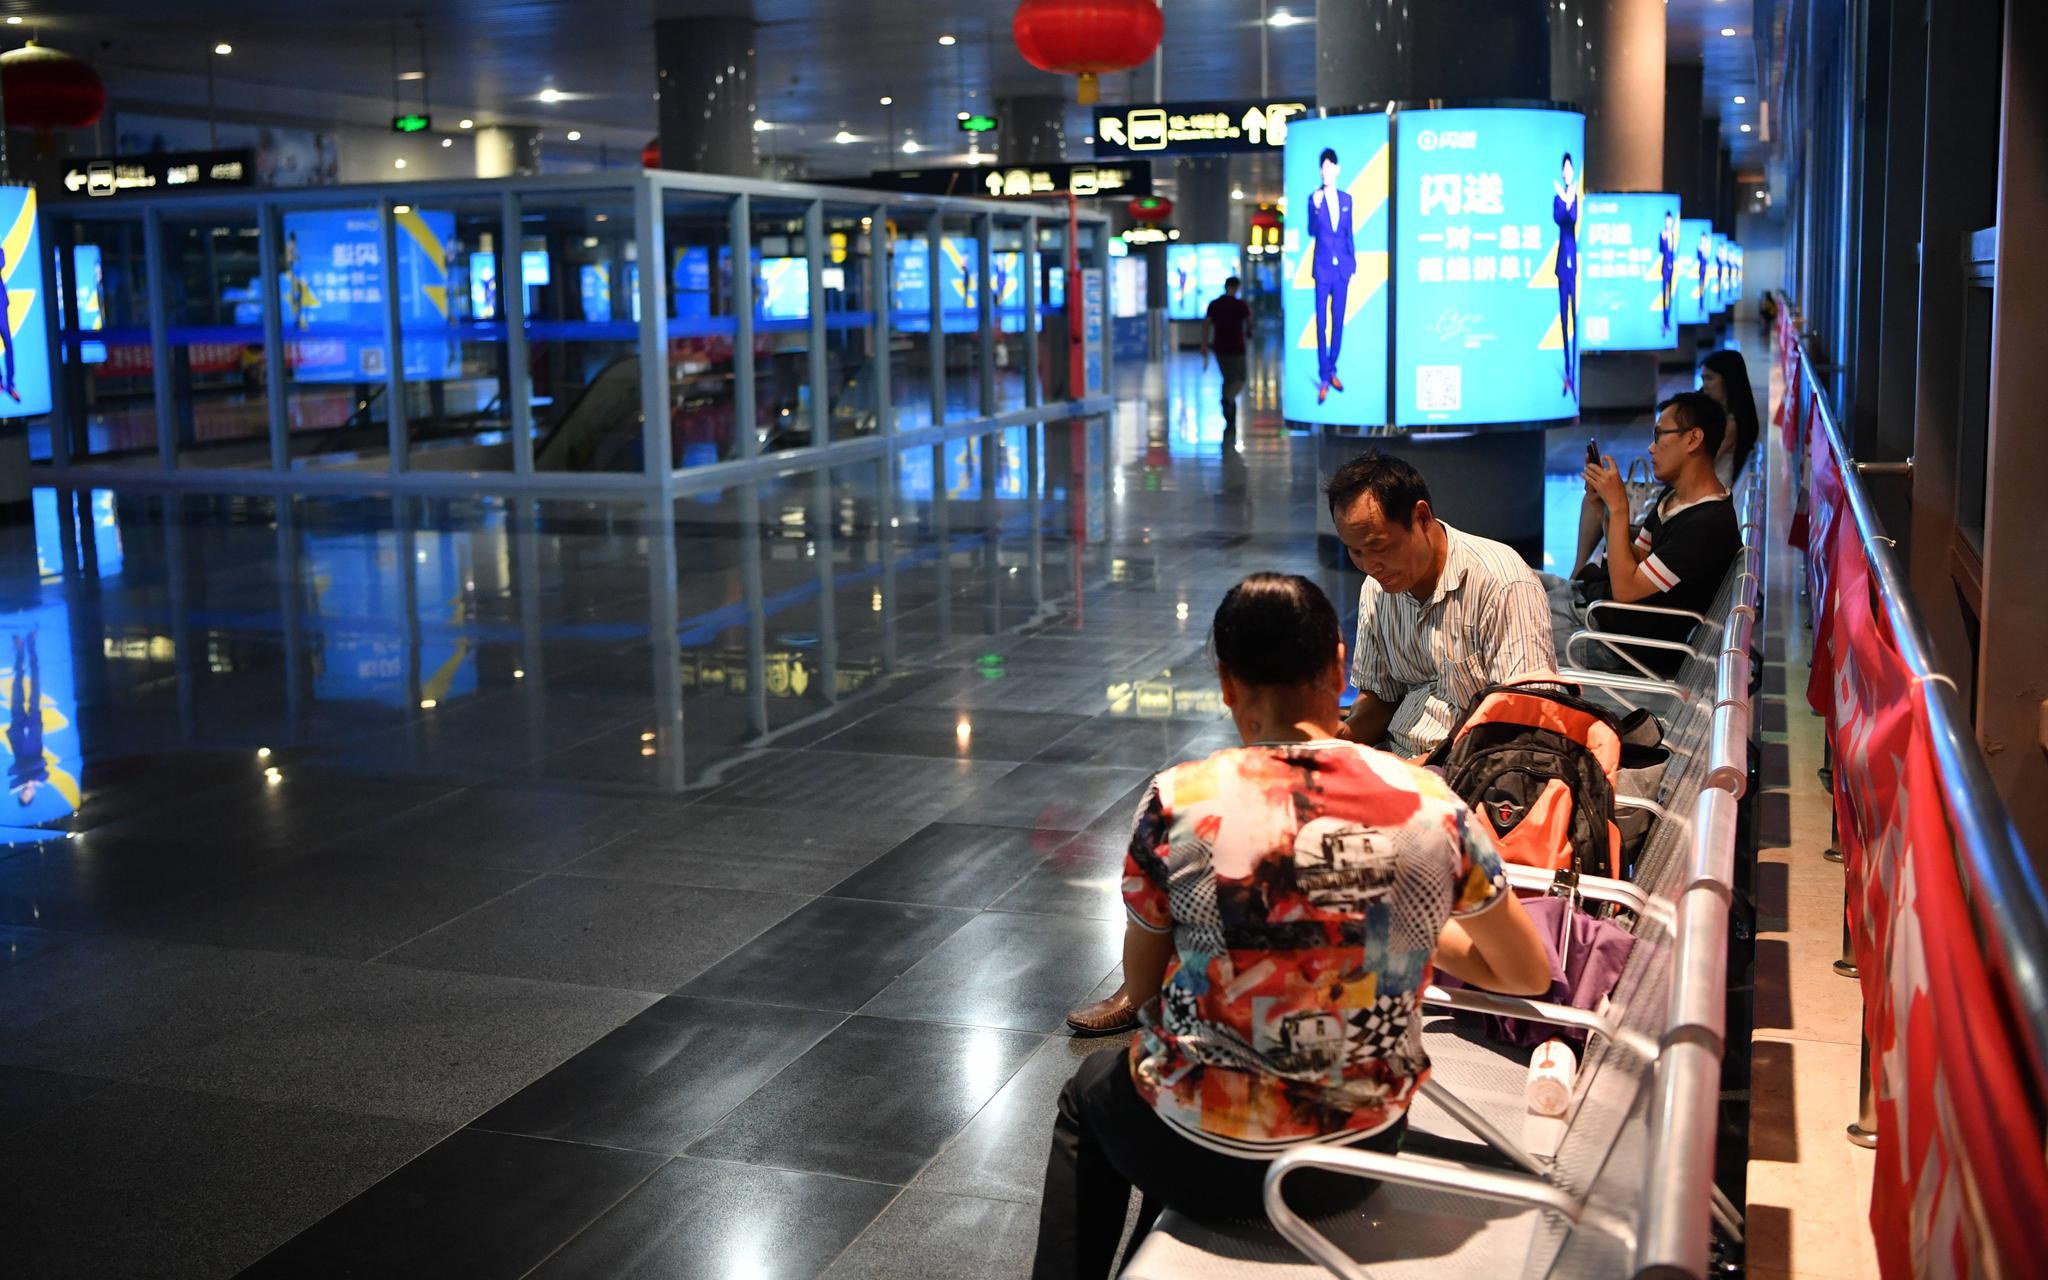 8月14日夜里，四惠枢纽站二层换乘大厅新设18个座椅，满足乘客临时休息的需求。摄影/新京报记者 吴江